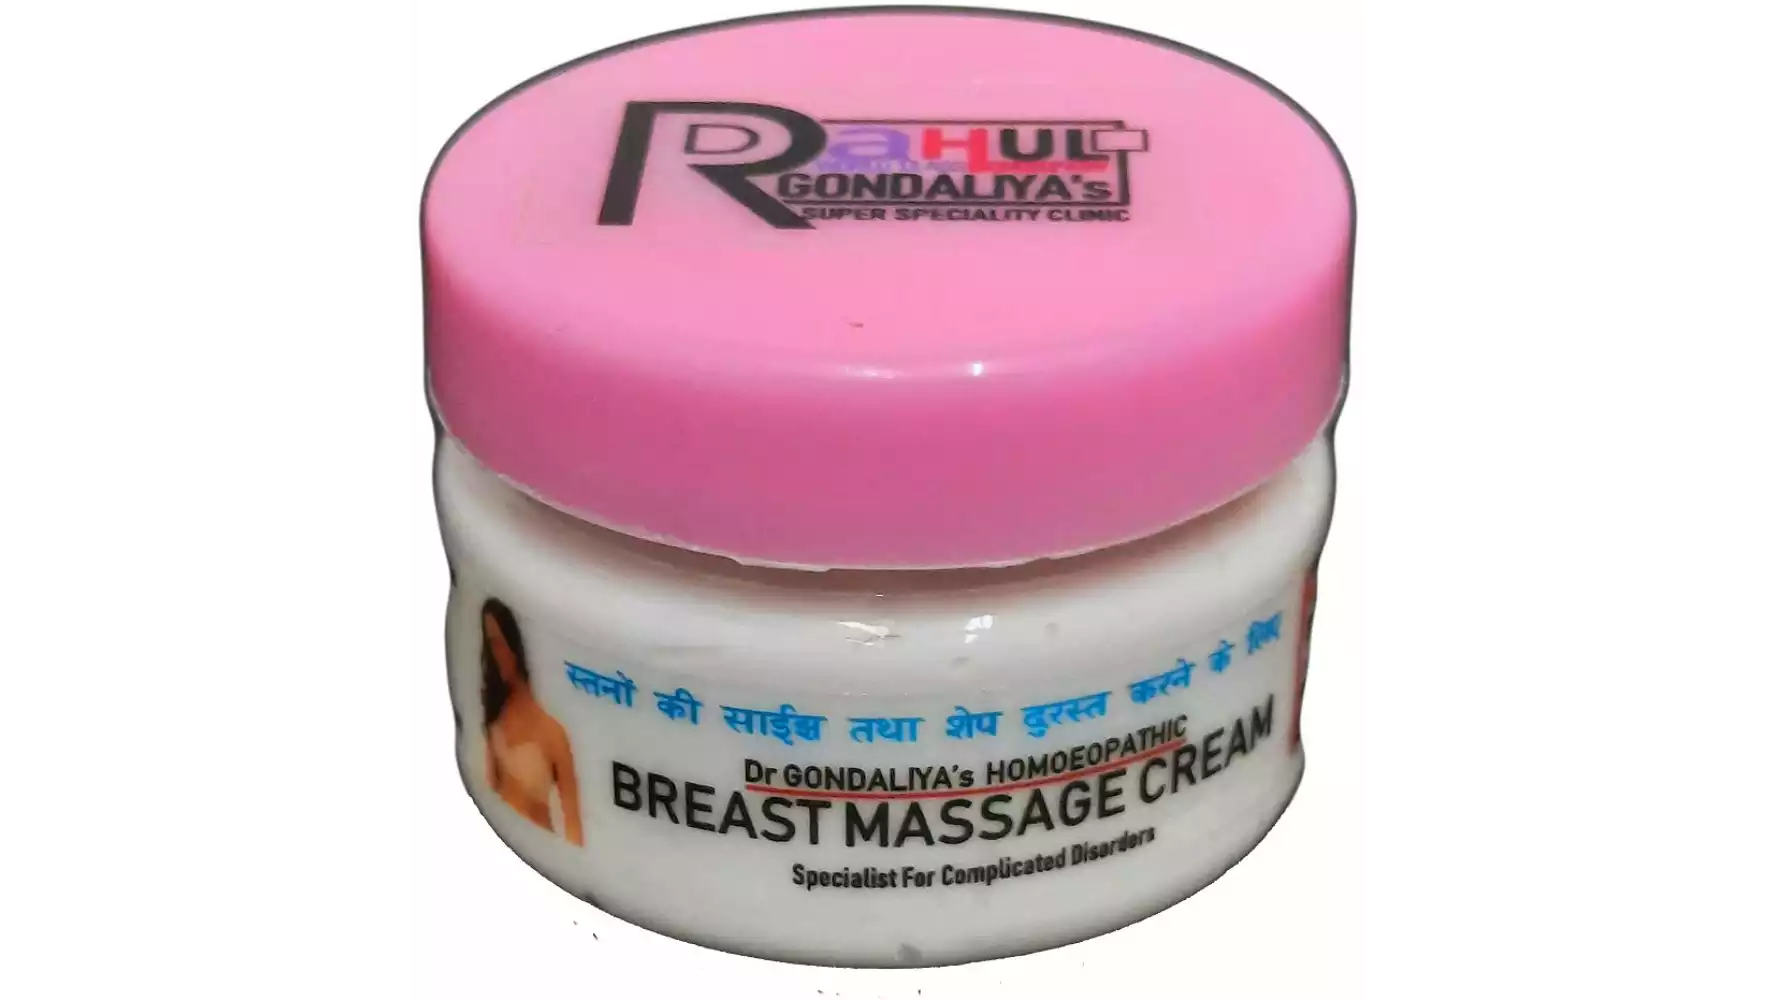 Dr Gondaliyas Homoeopathic Breast Massage Cream (500g)